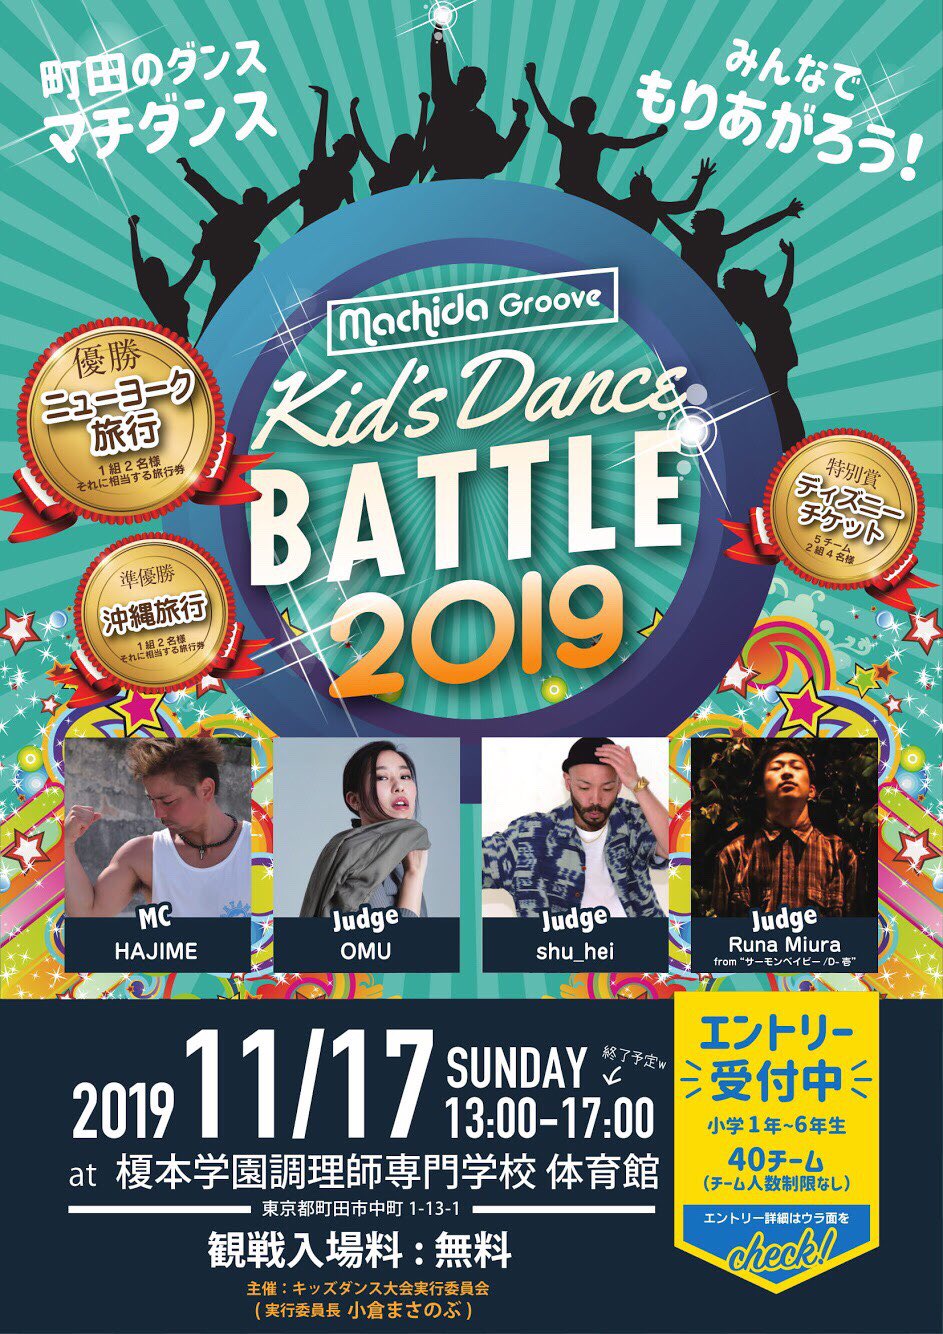 キッズダンス大会実行委員会 Kidsdance Mcd Twitter